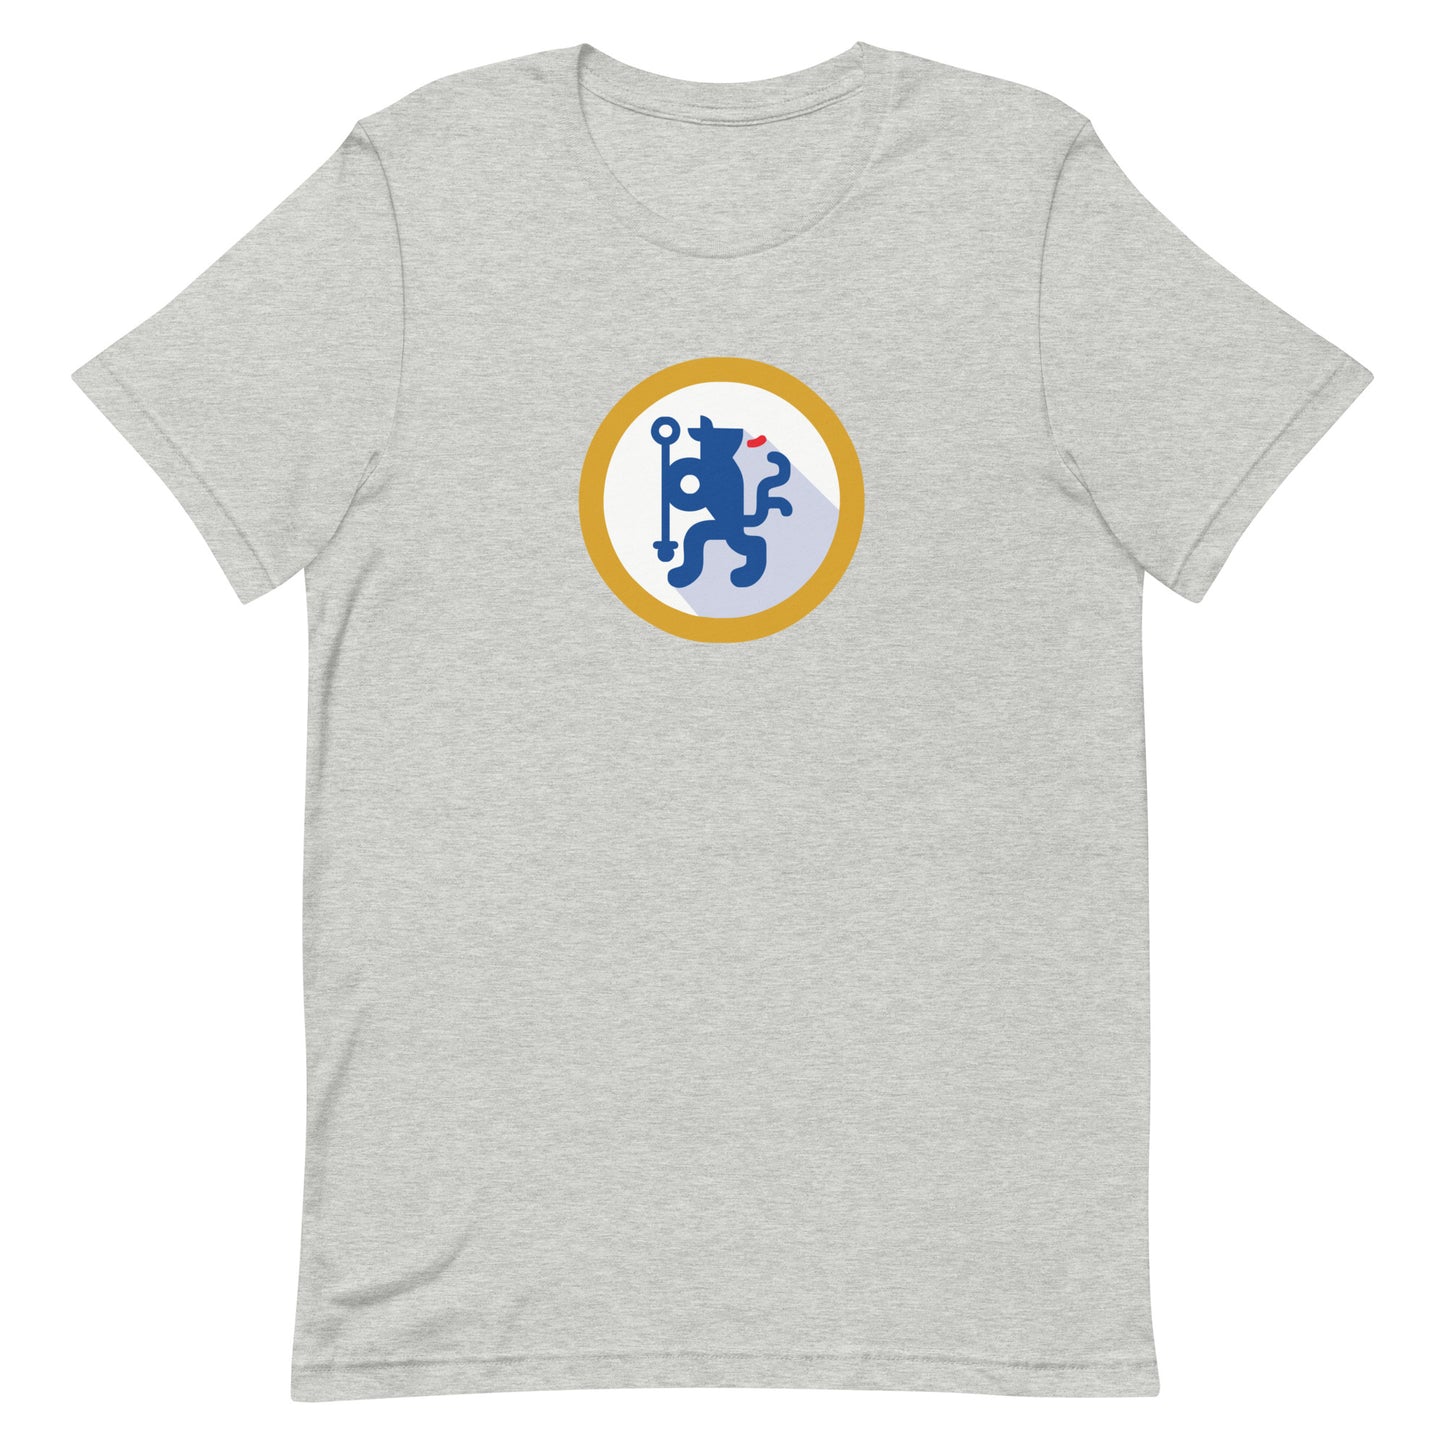 Chelsea Blues Vintage Unisex t-shirt